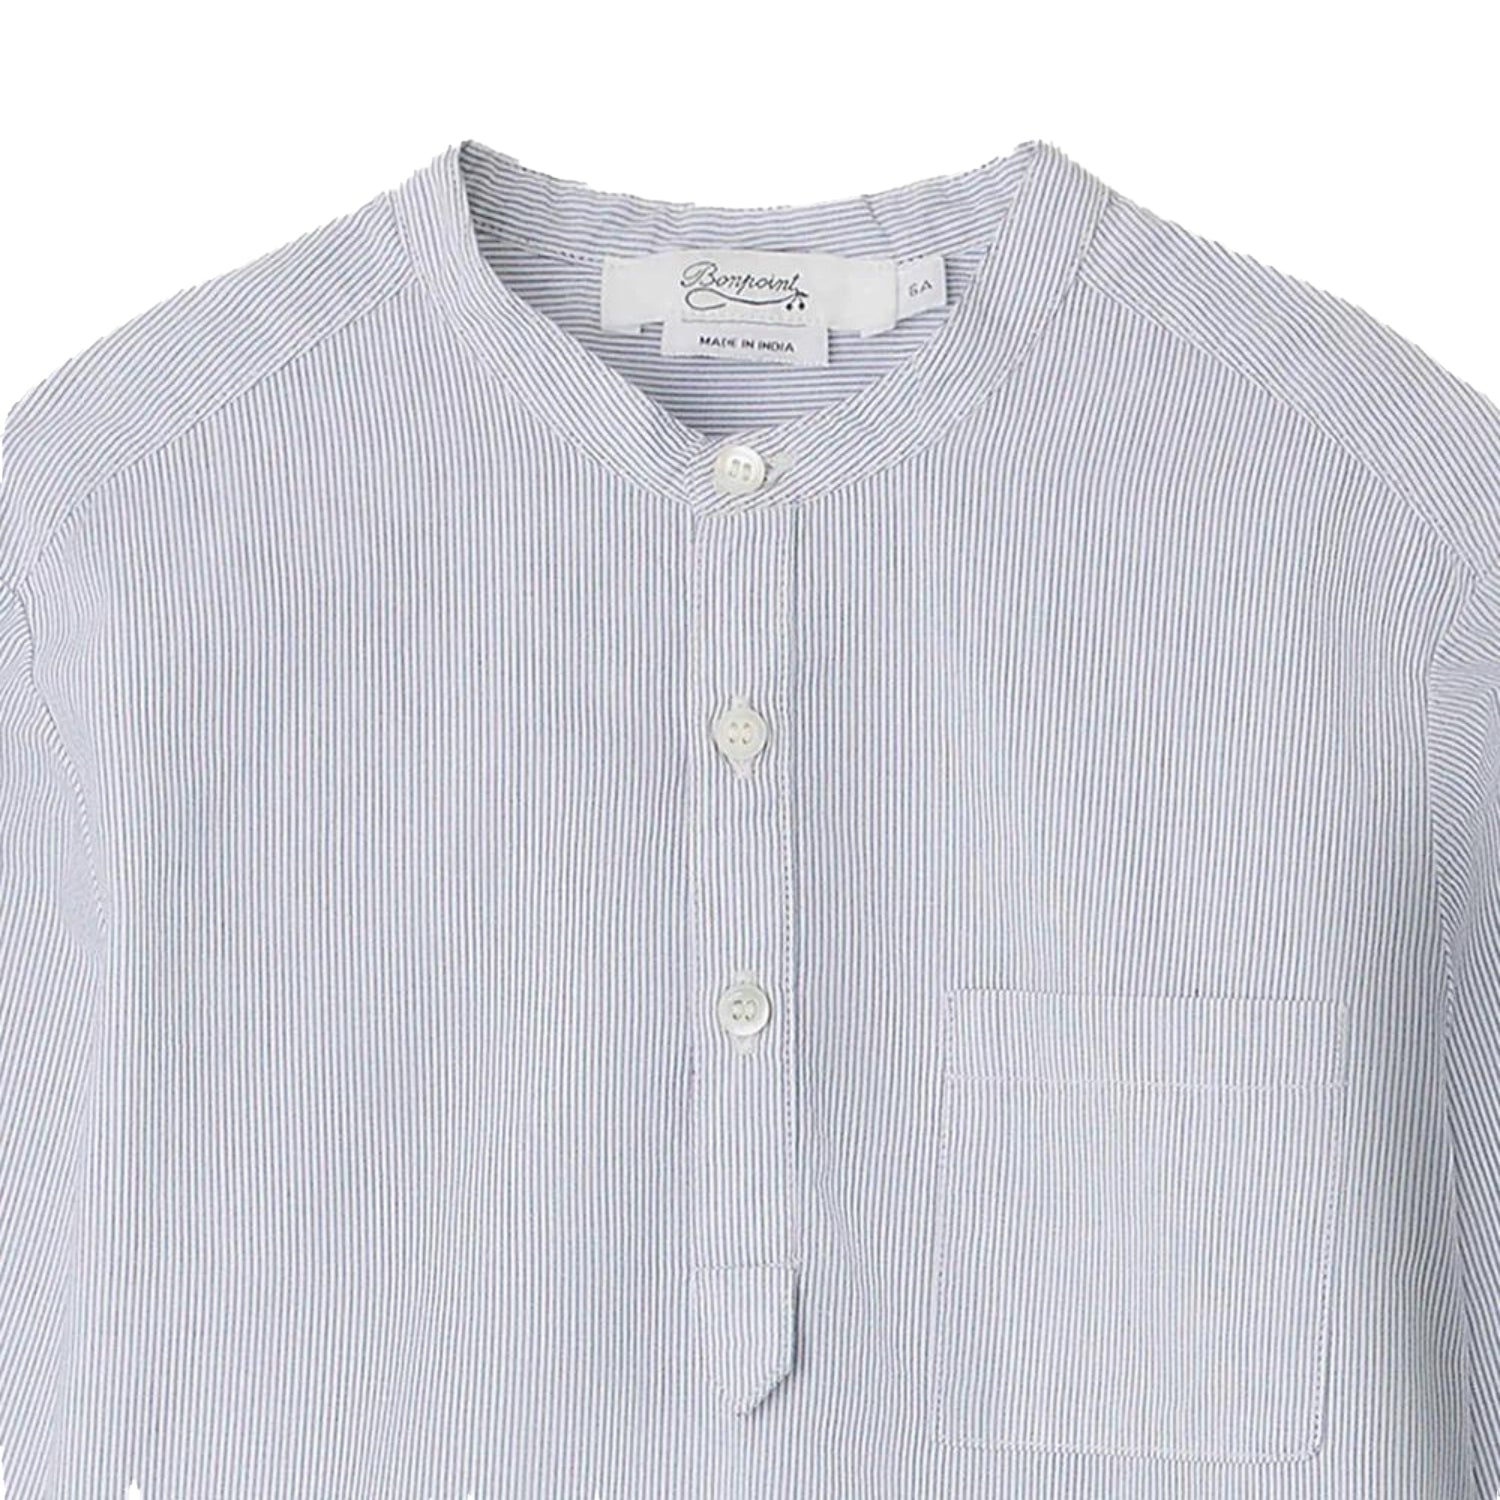 Bonpoint Claude Buttoned Shirt - Blue